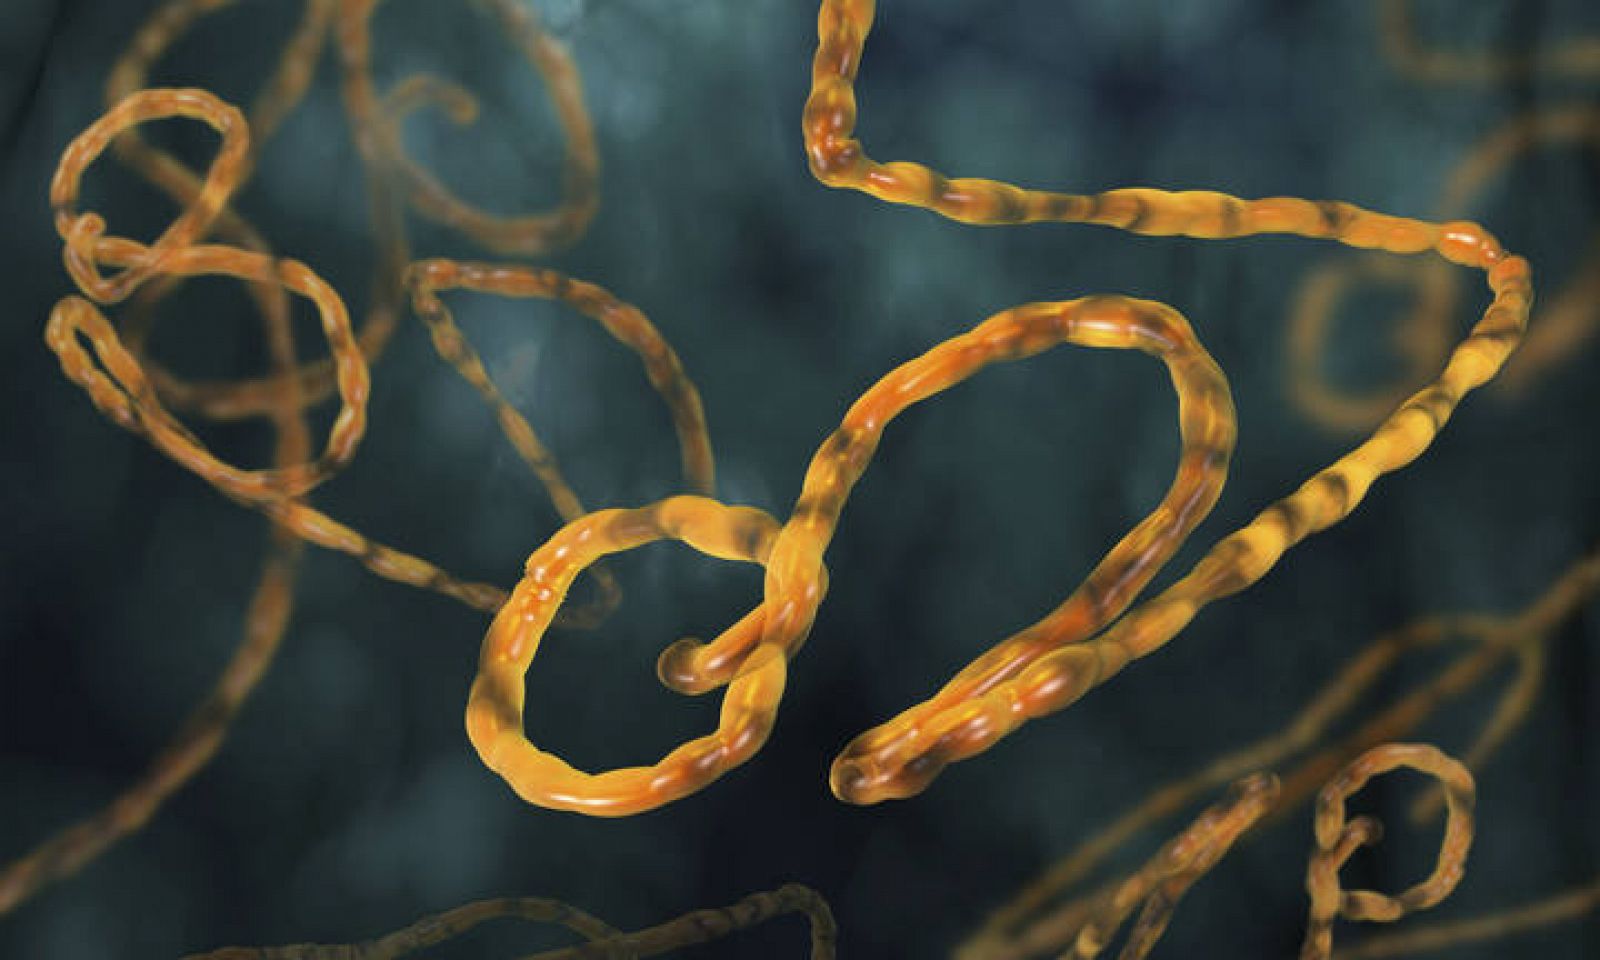  Ilustración del virus del Ébola.